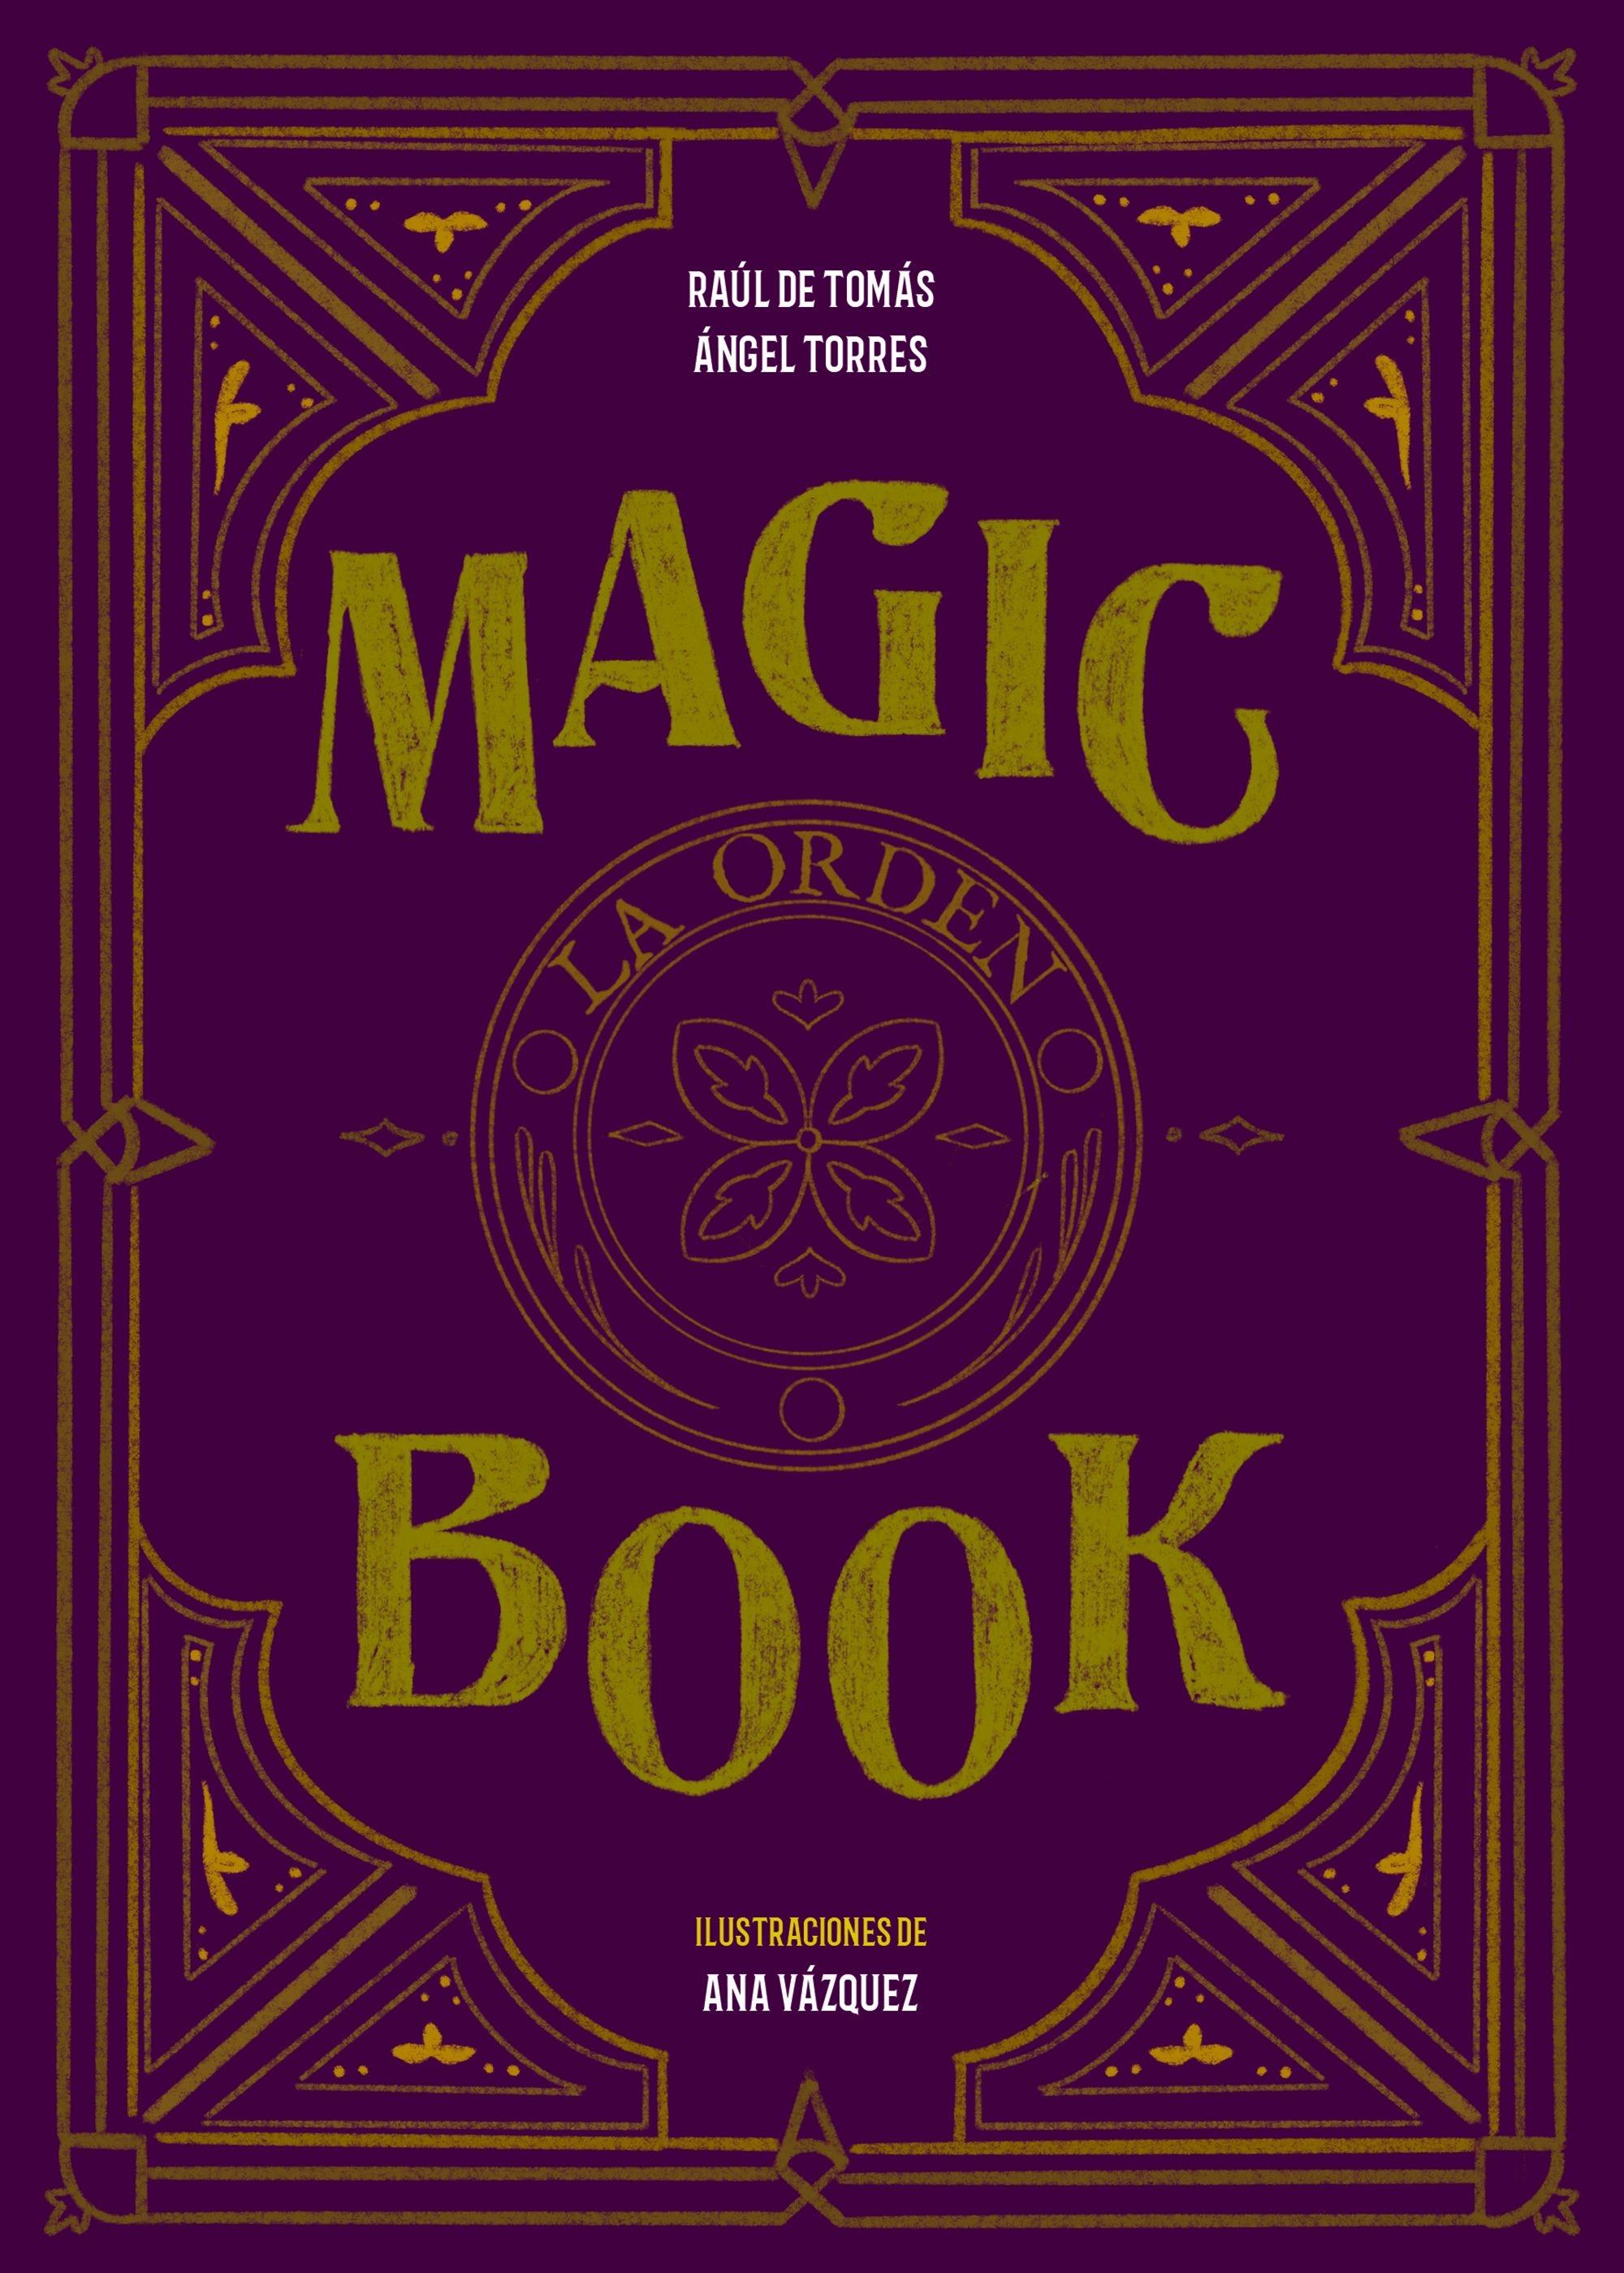 Magic book "La orden"